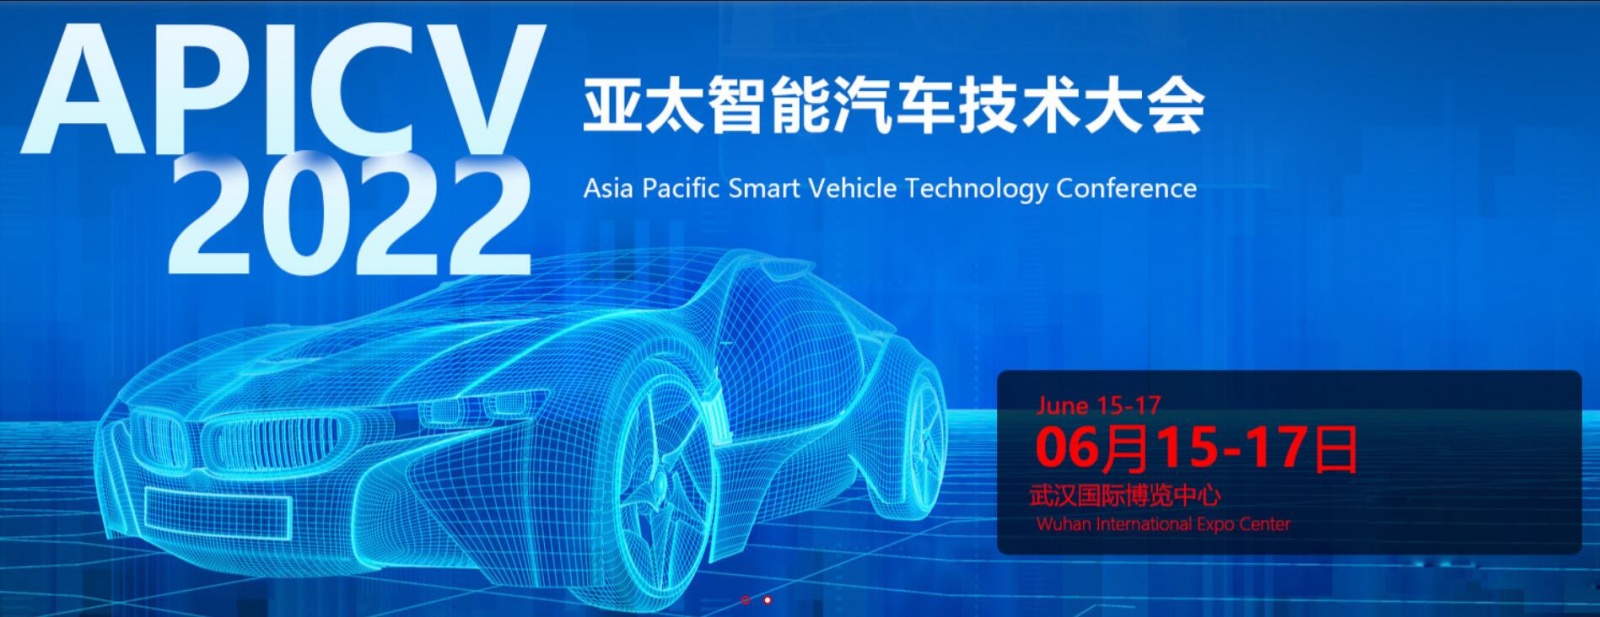 2022武汉国际汽车服务用品、美容养护汽车电子、改装、后市场博览会